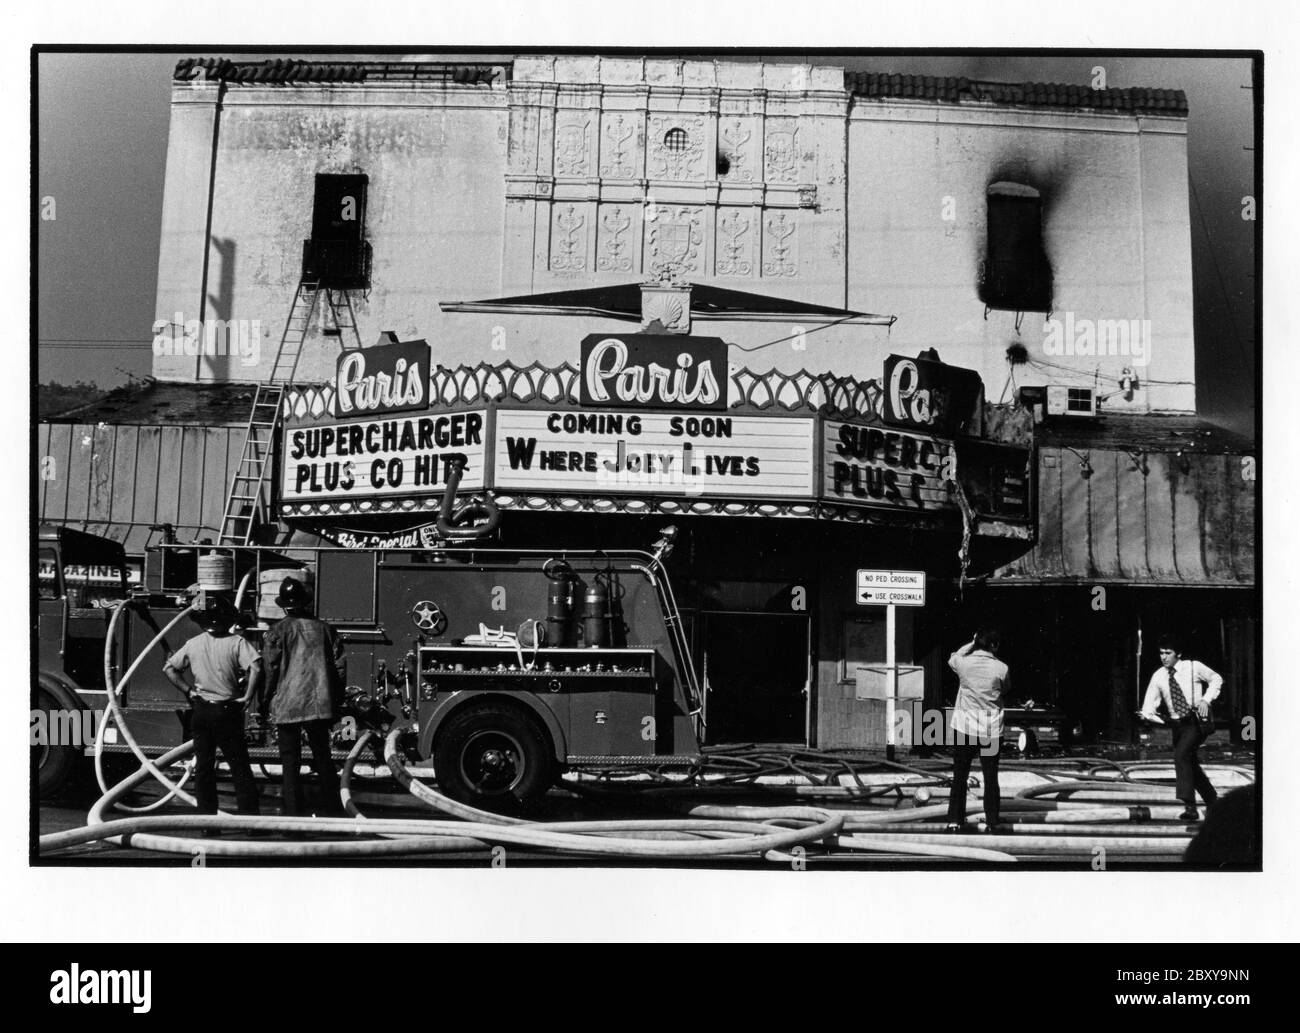 Pompier et reporters inspectant les dommages au théâtre de Paris sur le boulevard Santa Monica à West Hollywood après un incendie. Vers 1979 Banque D'Images